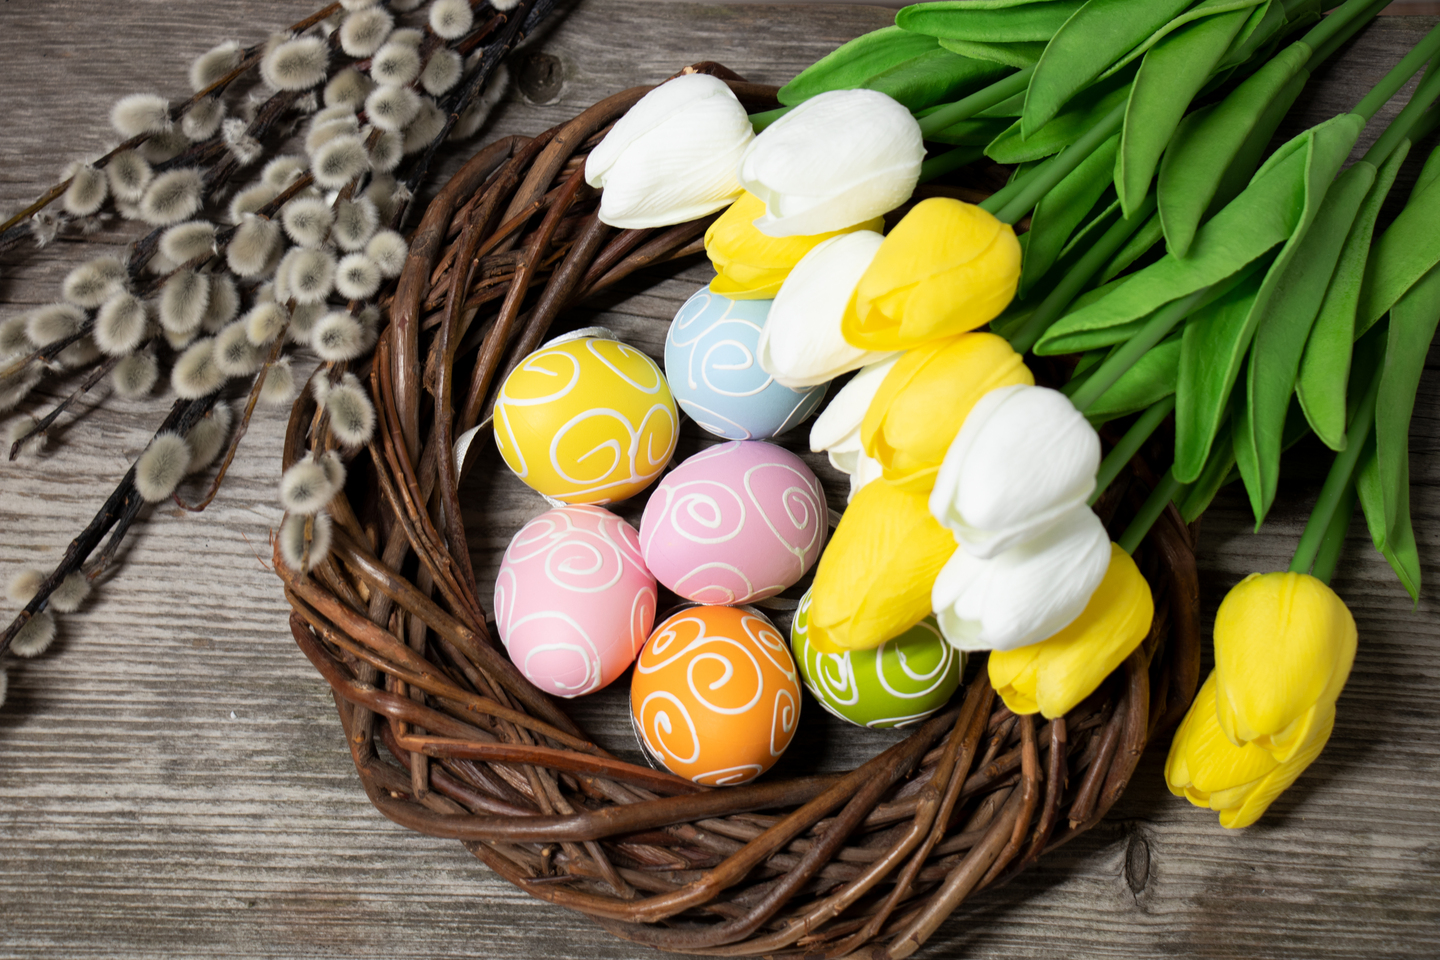 Wir wnschen Ihnen ein frohes Osterfest!